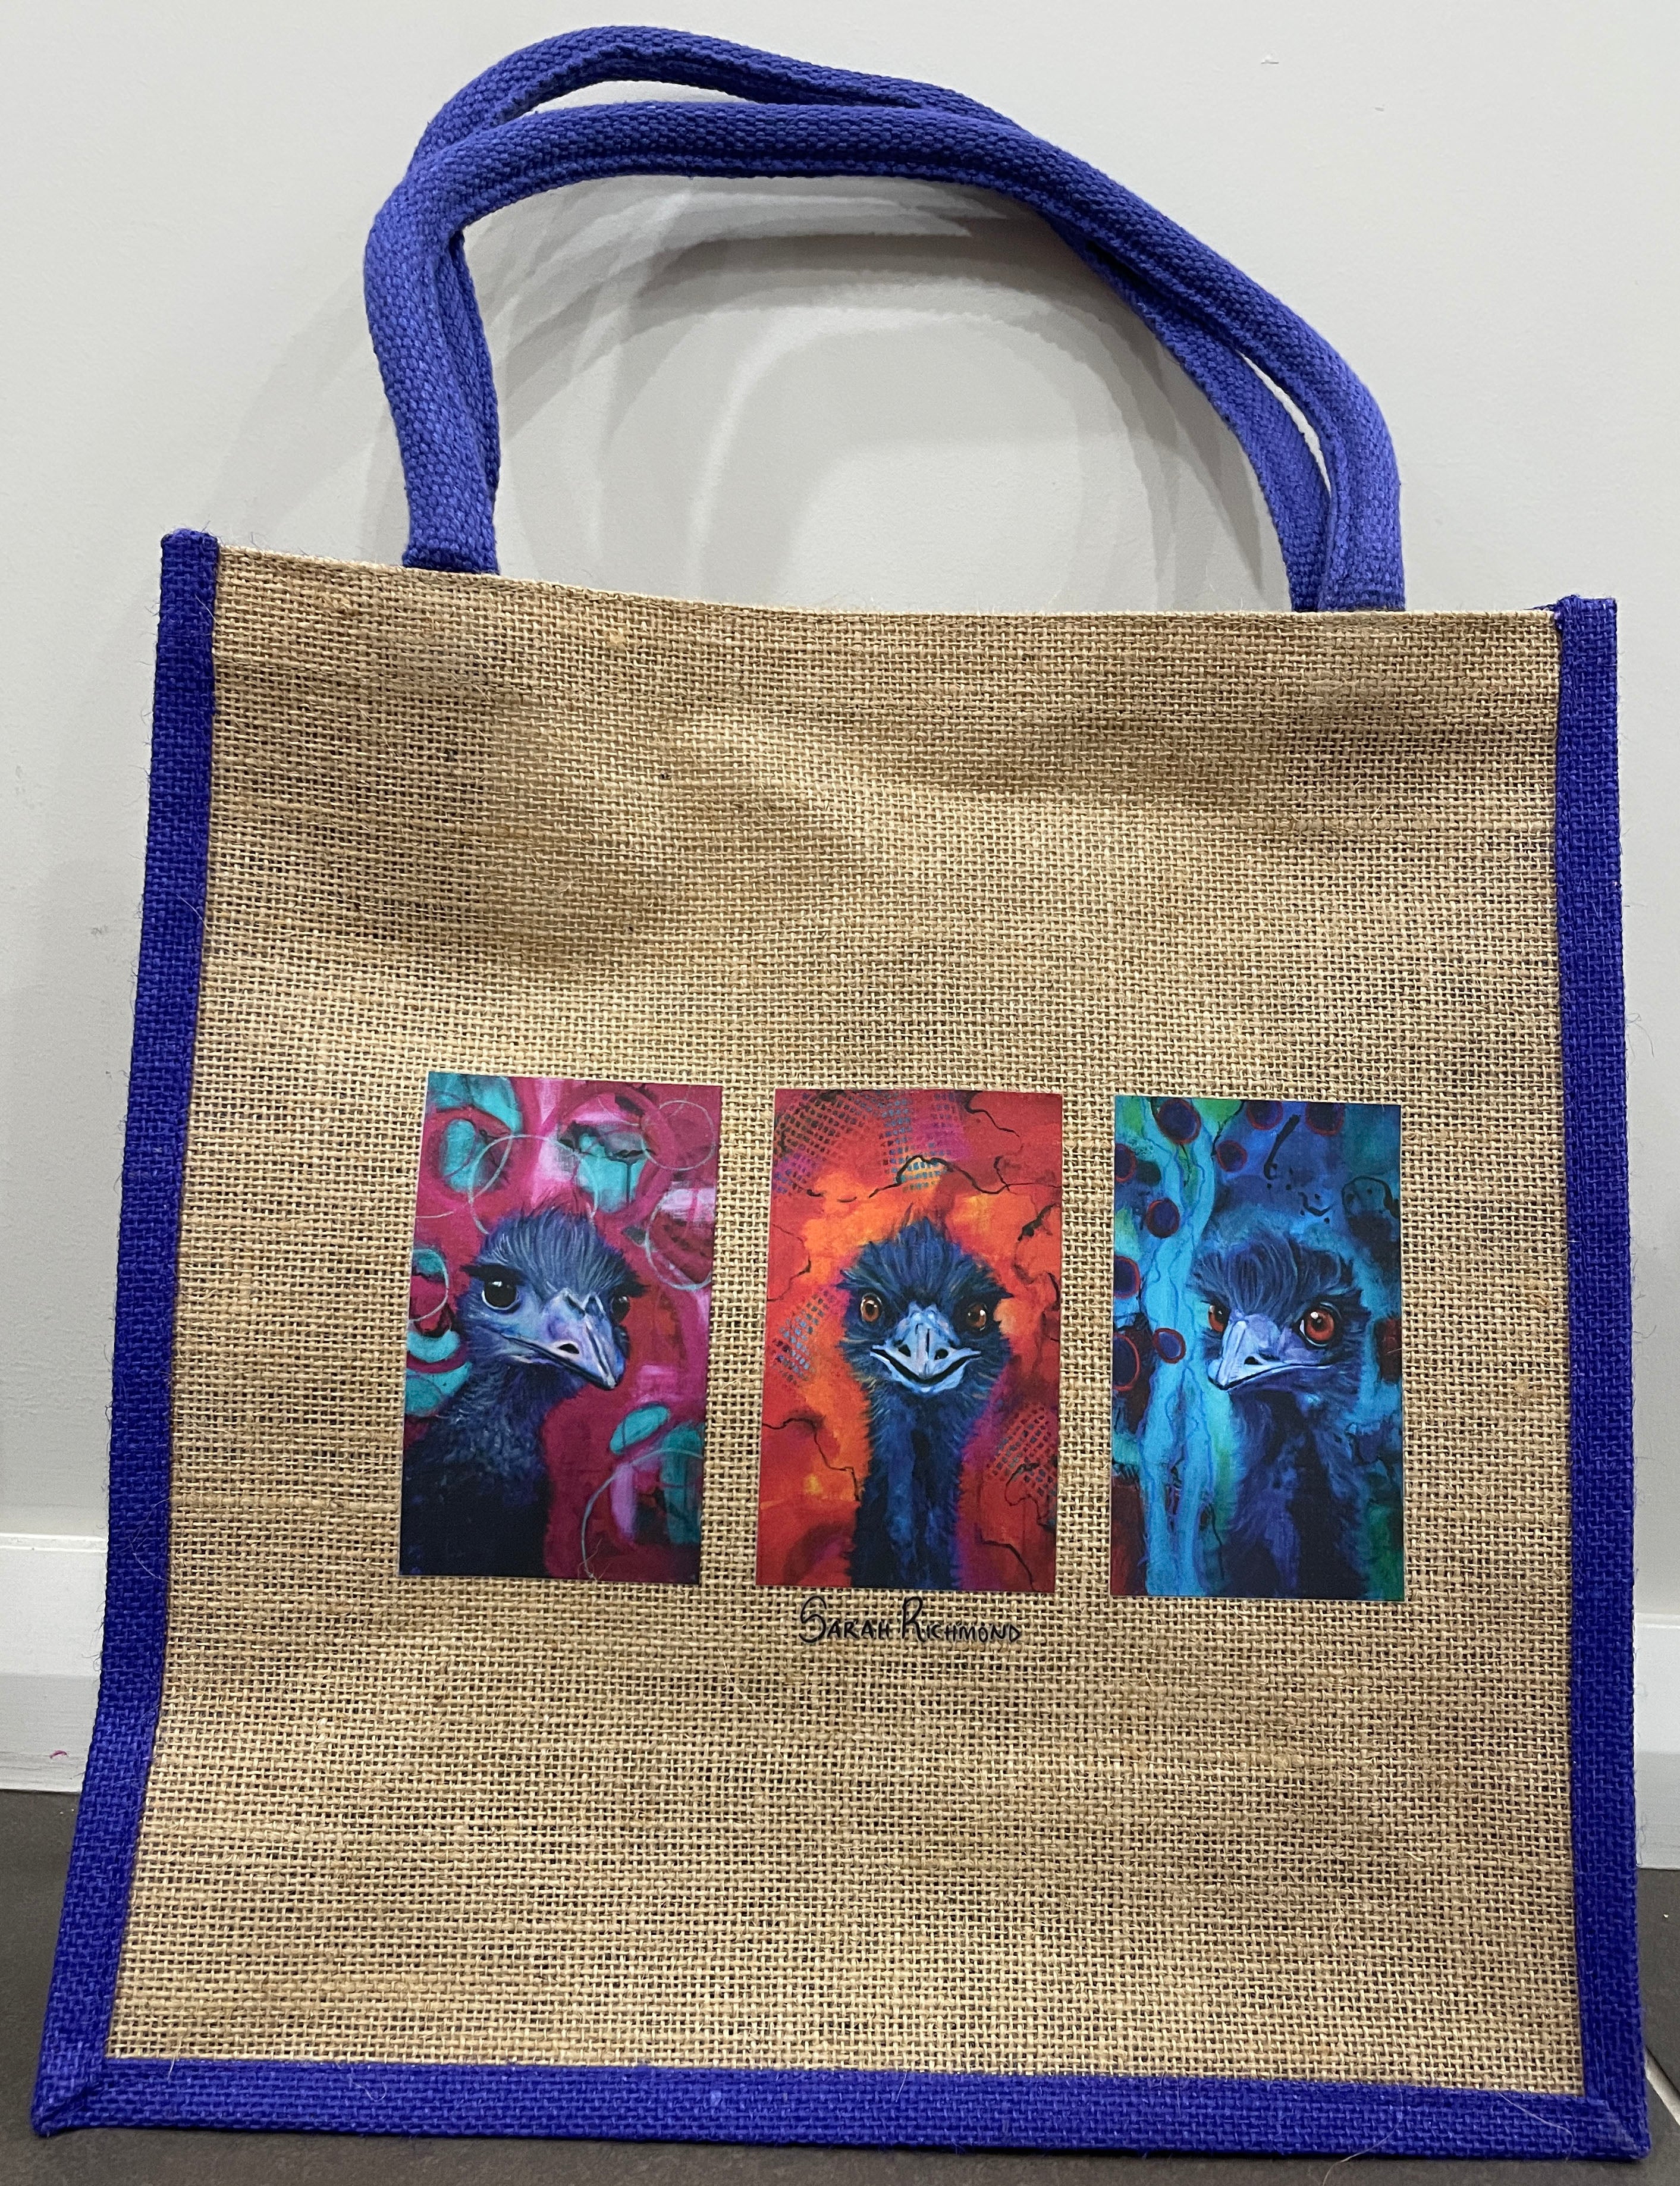 Printed Jute Bag - Purple with 3 Emus